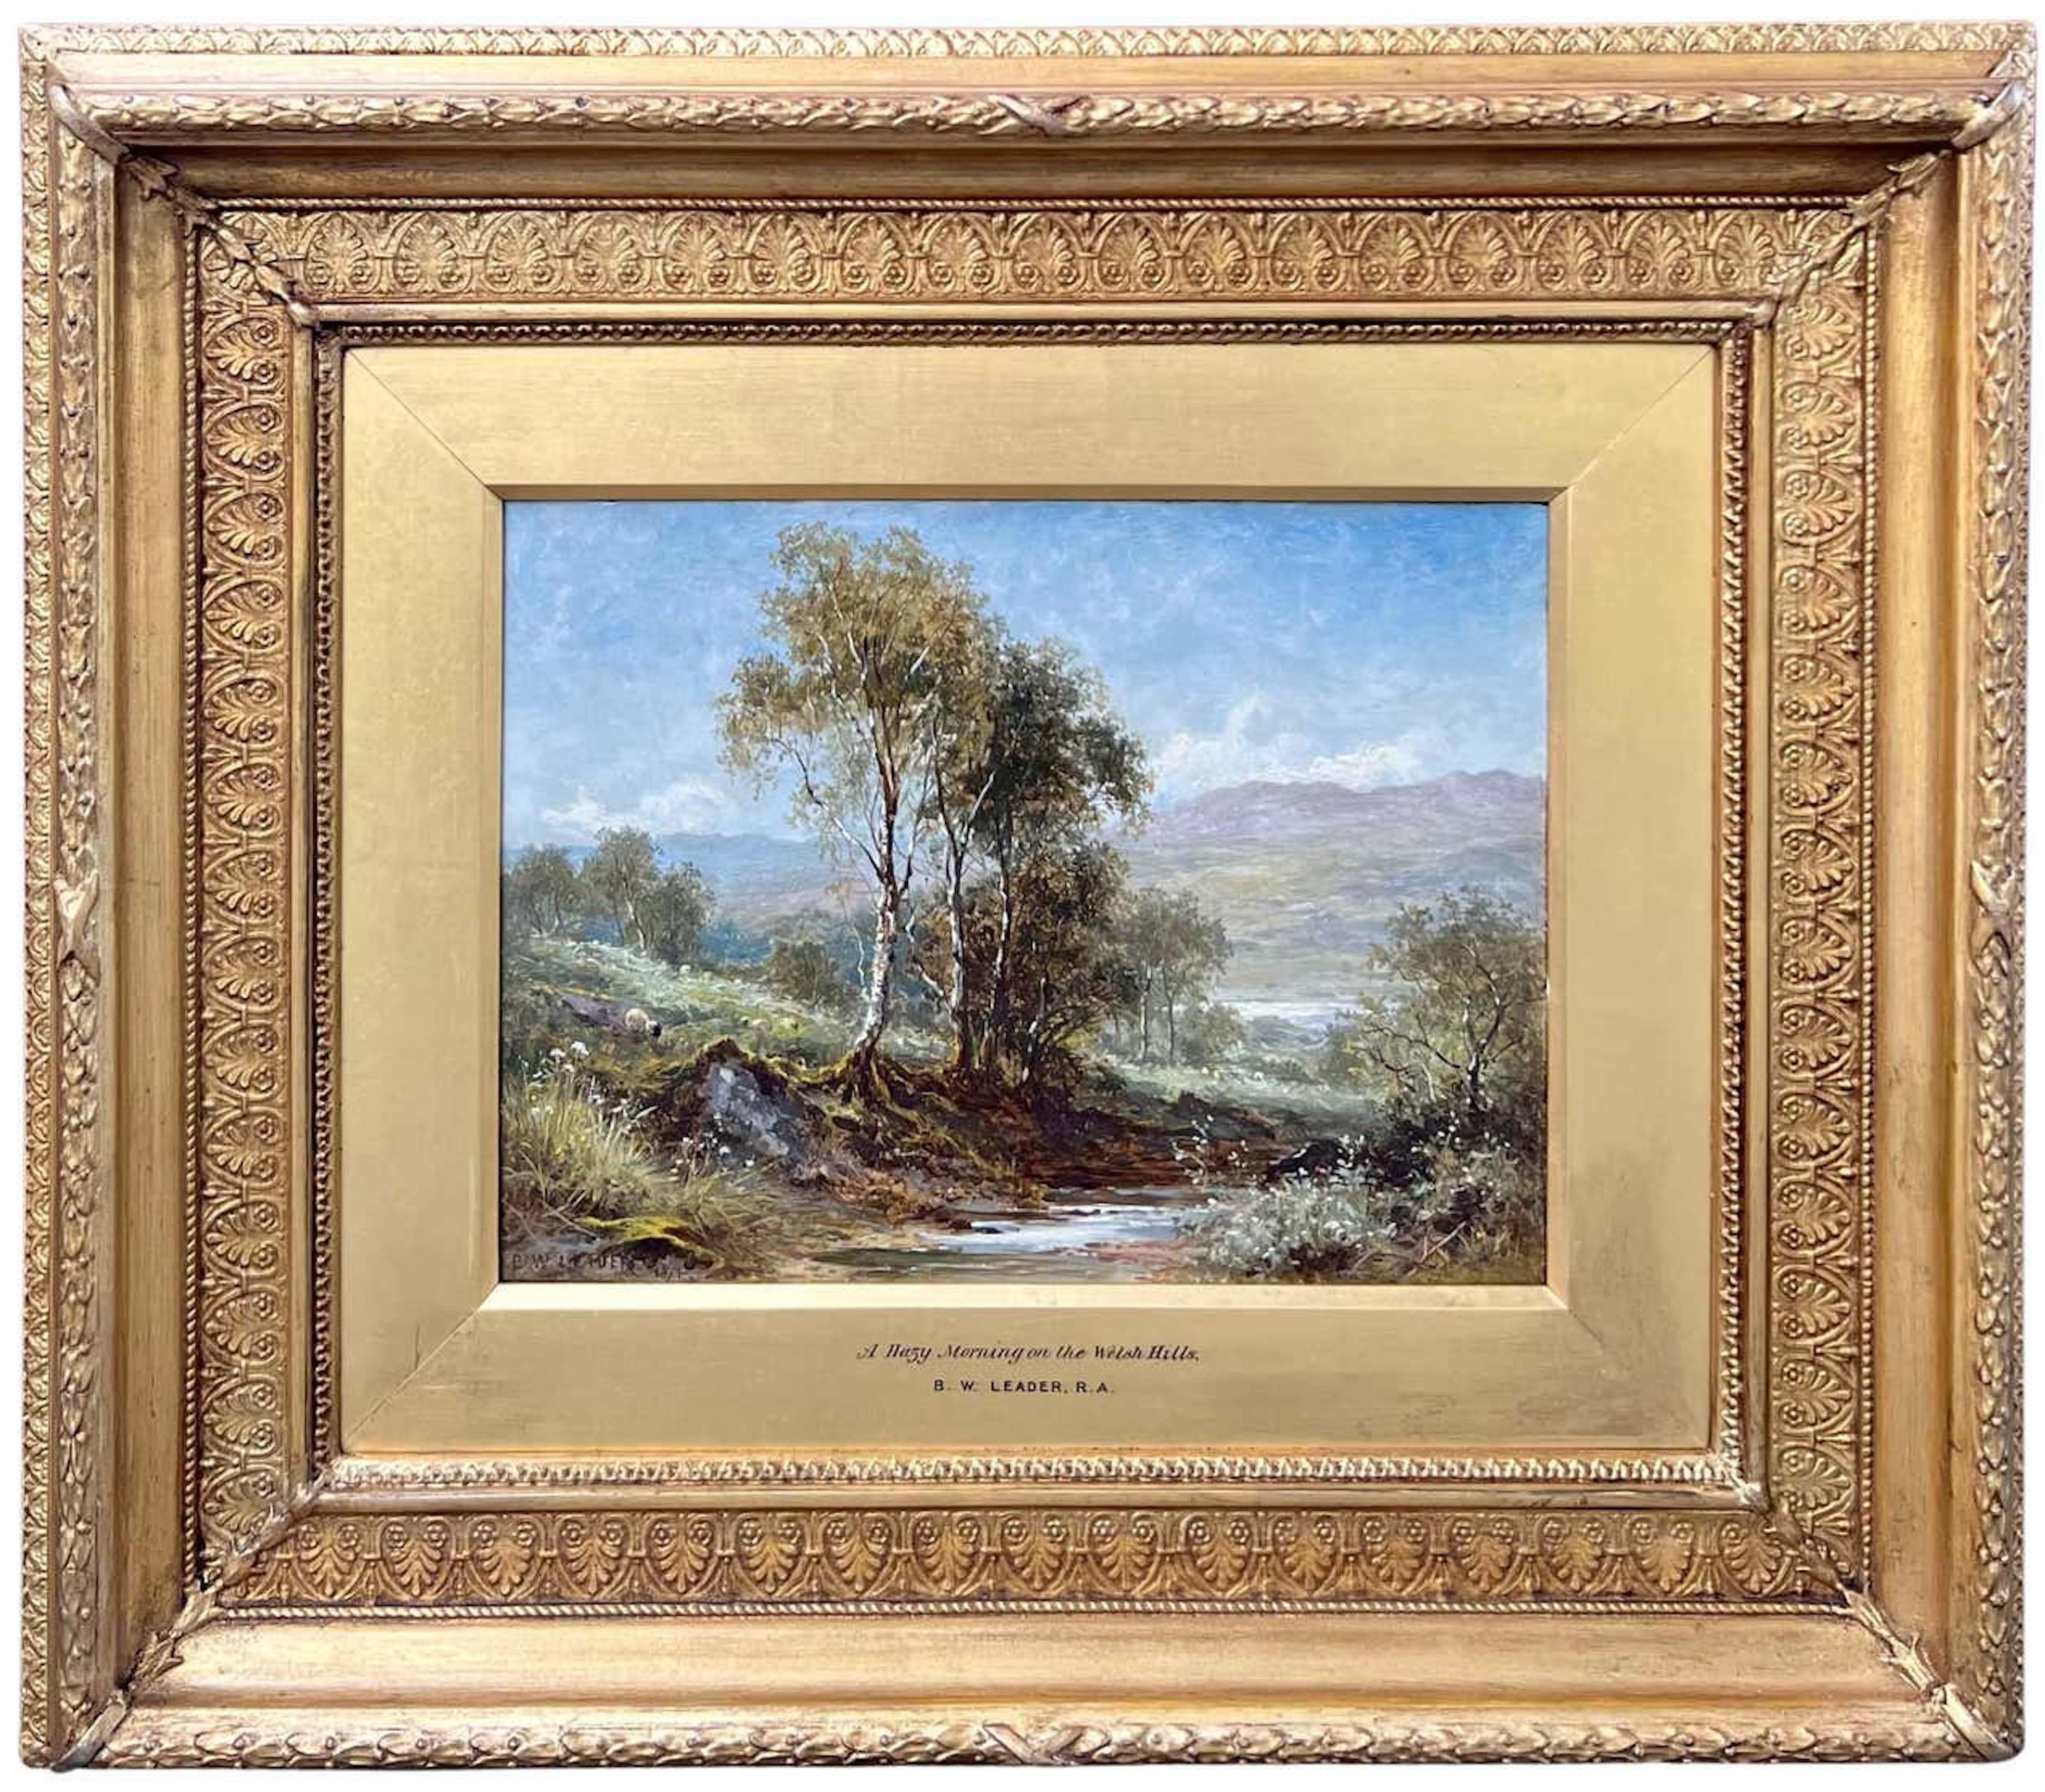 Landscape Painting Benjamin Williams Leader - Un matin brumeux sur les collines galloises